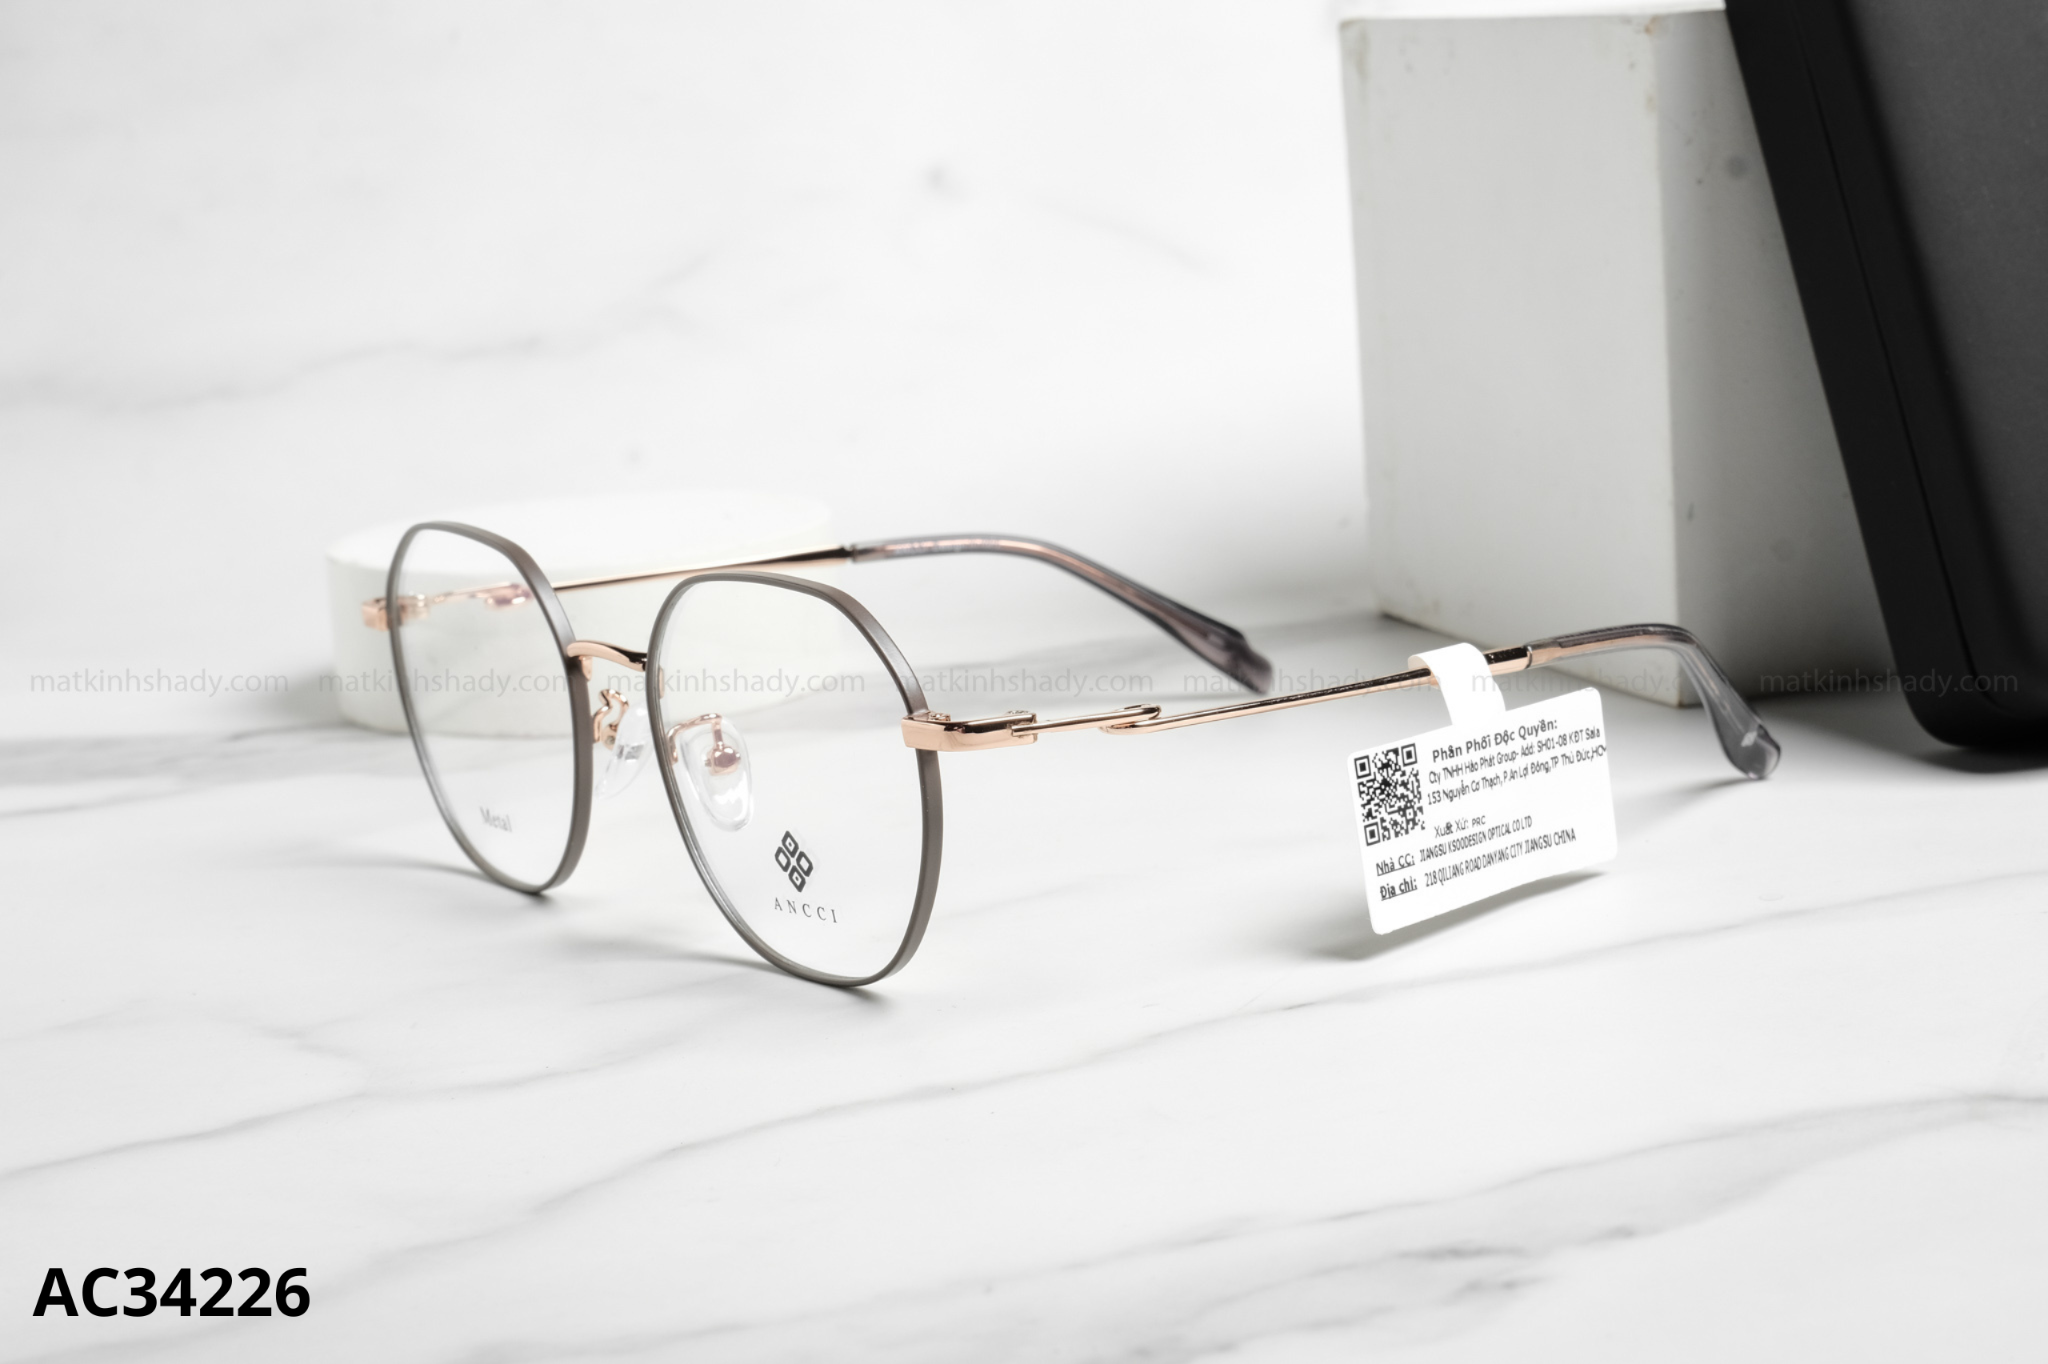  ANCCI Eyewear - Glasses - AC34226 